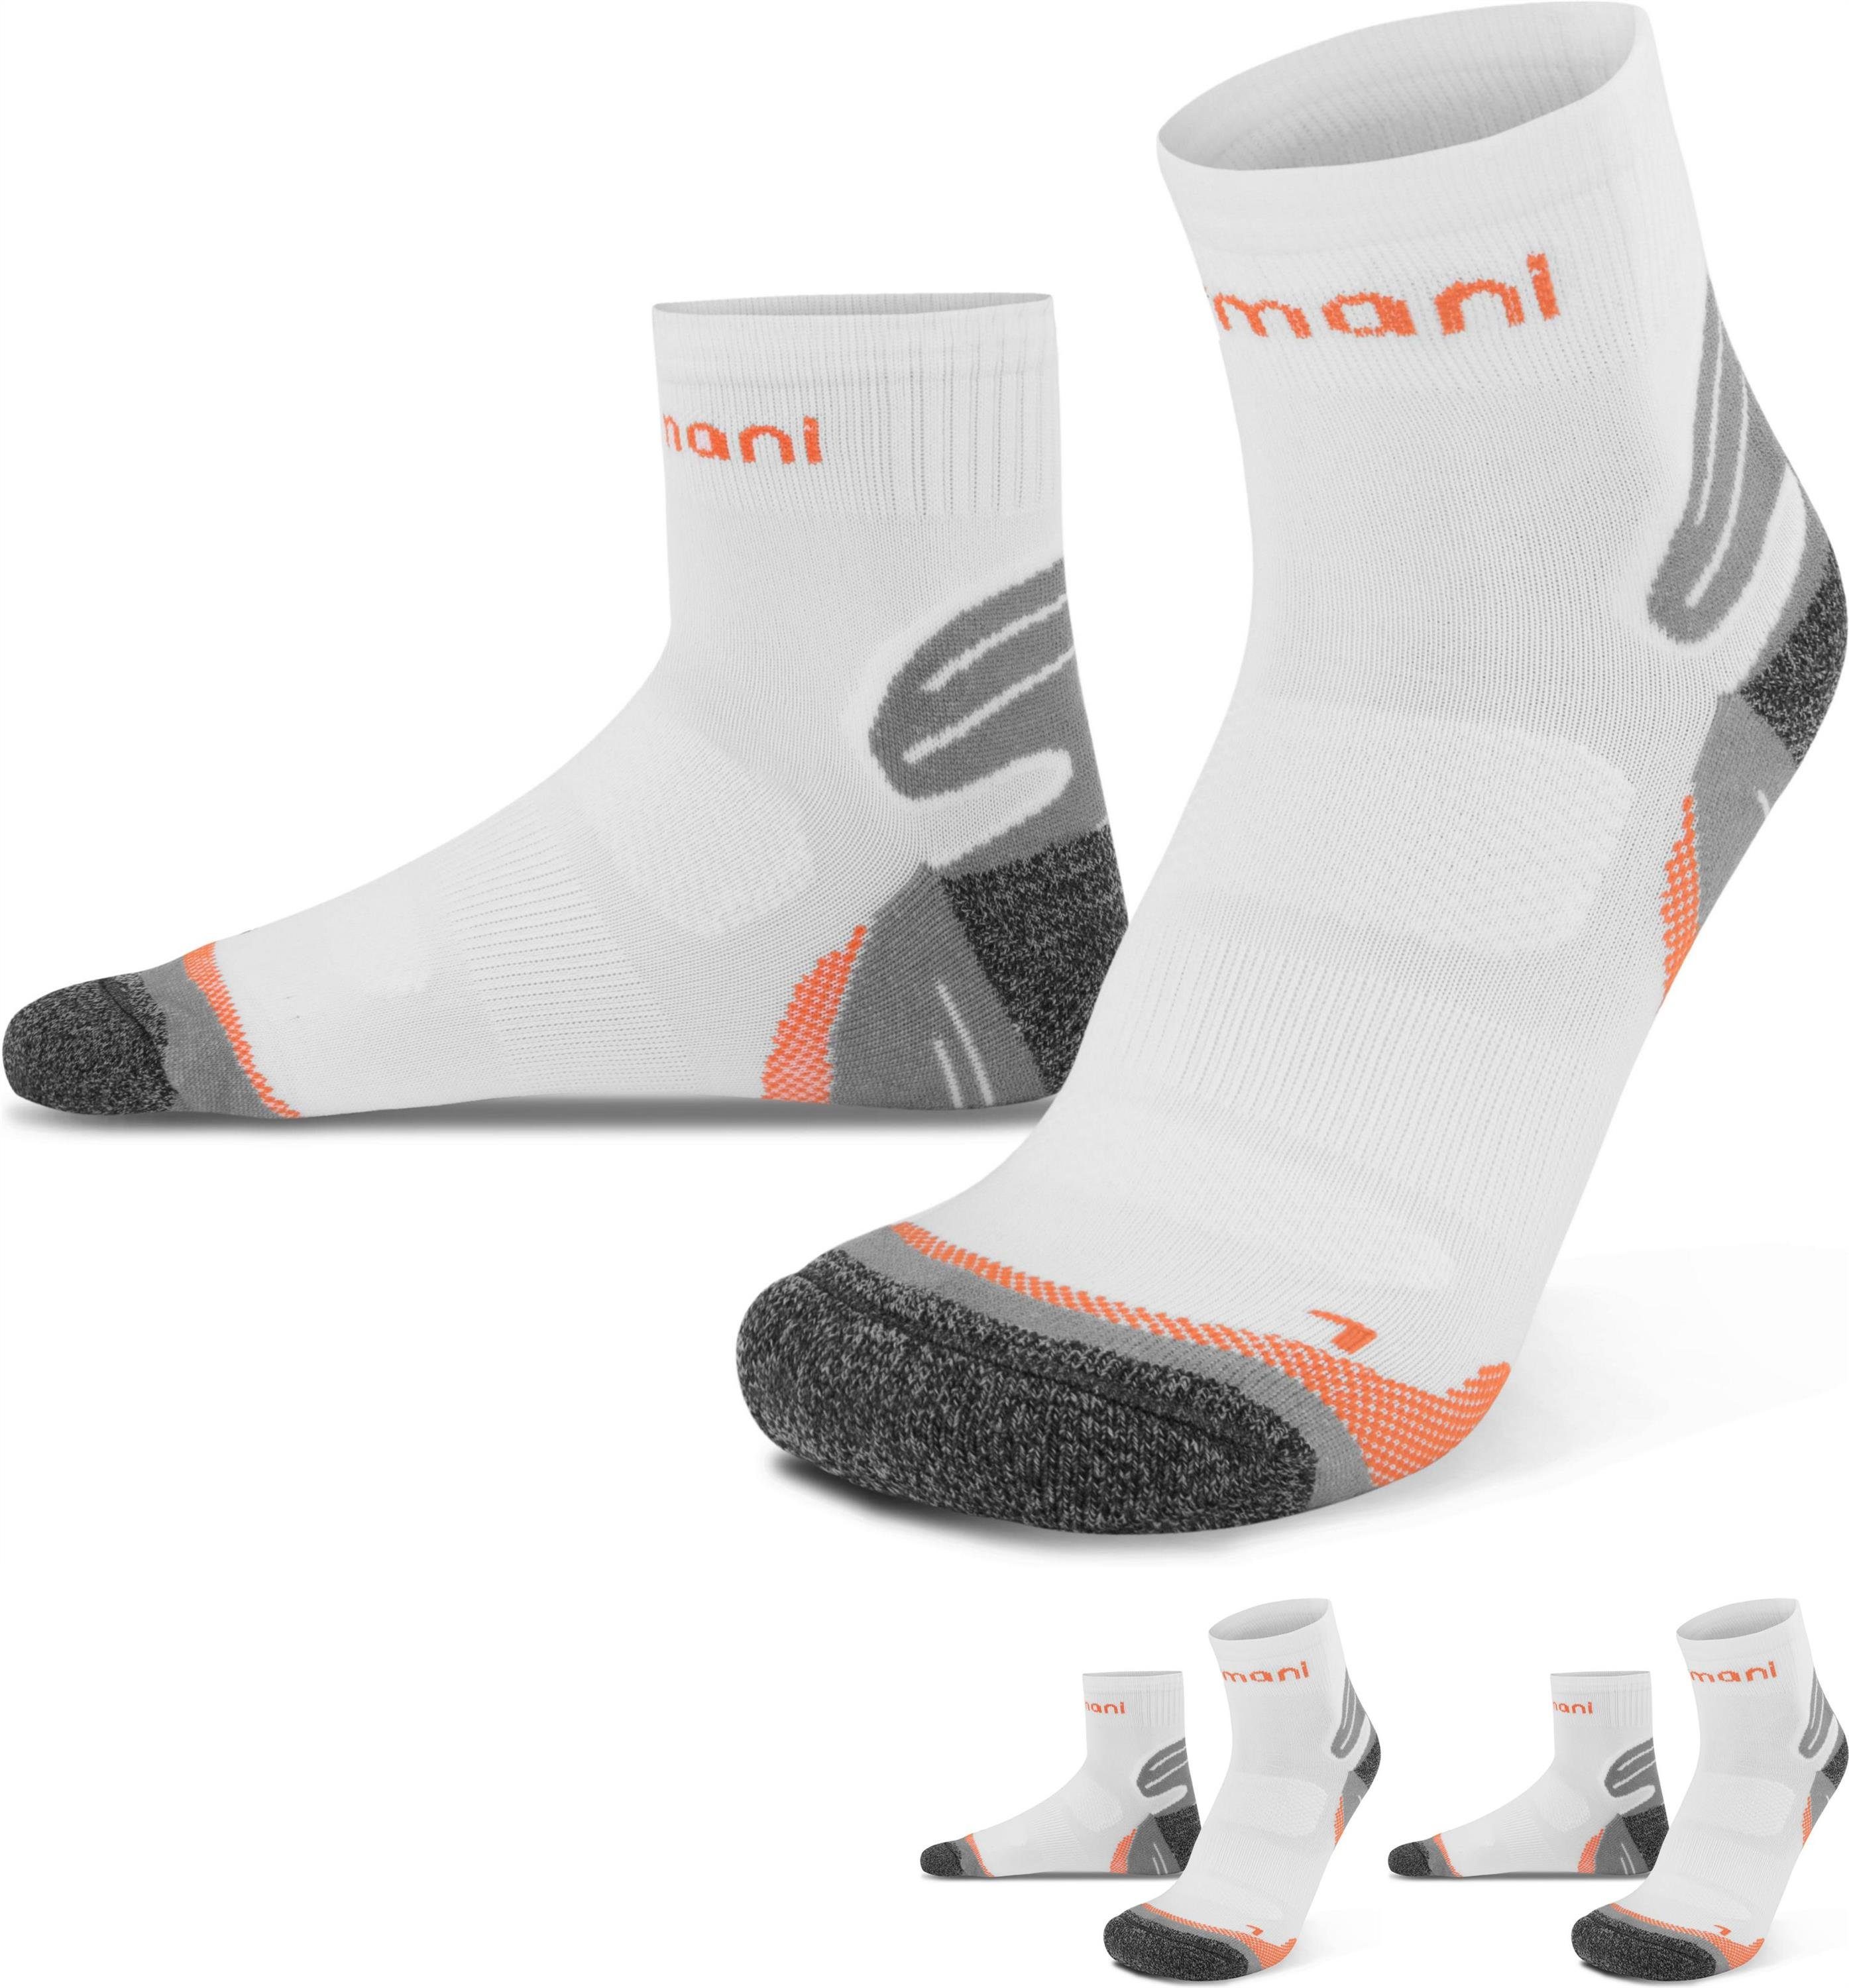 normani Laufsocken (3 Paar) kurzer Schaft mit elastischem Aktivbund Weiß/Orange | Socken